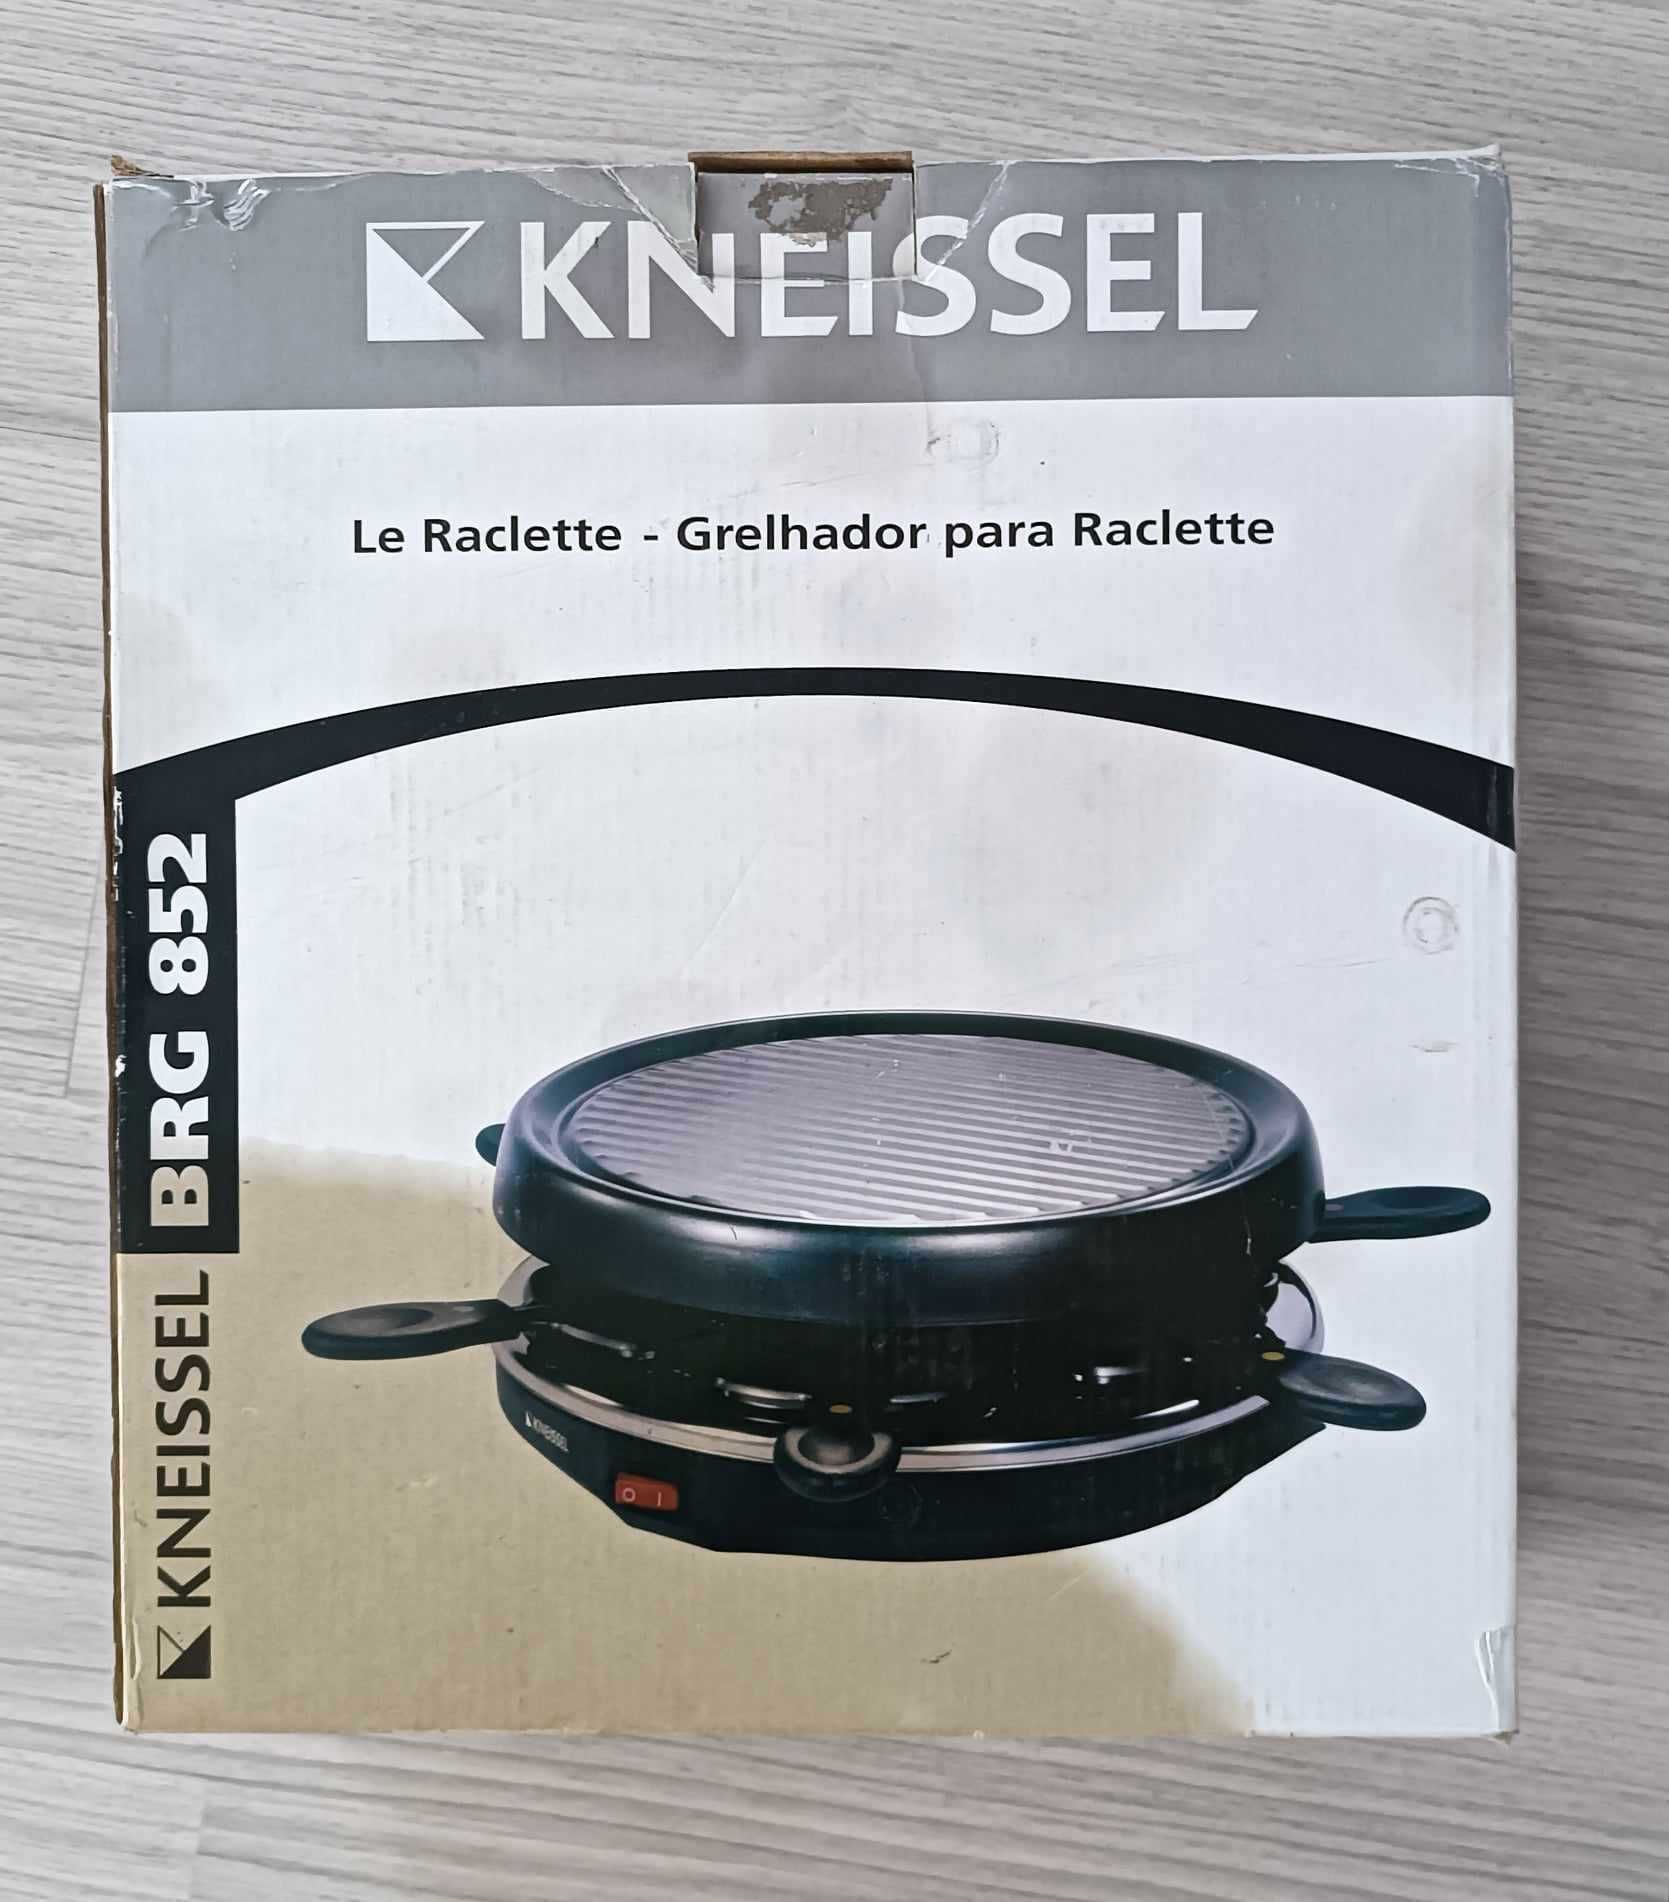 Raclette Kneissel BRG 852